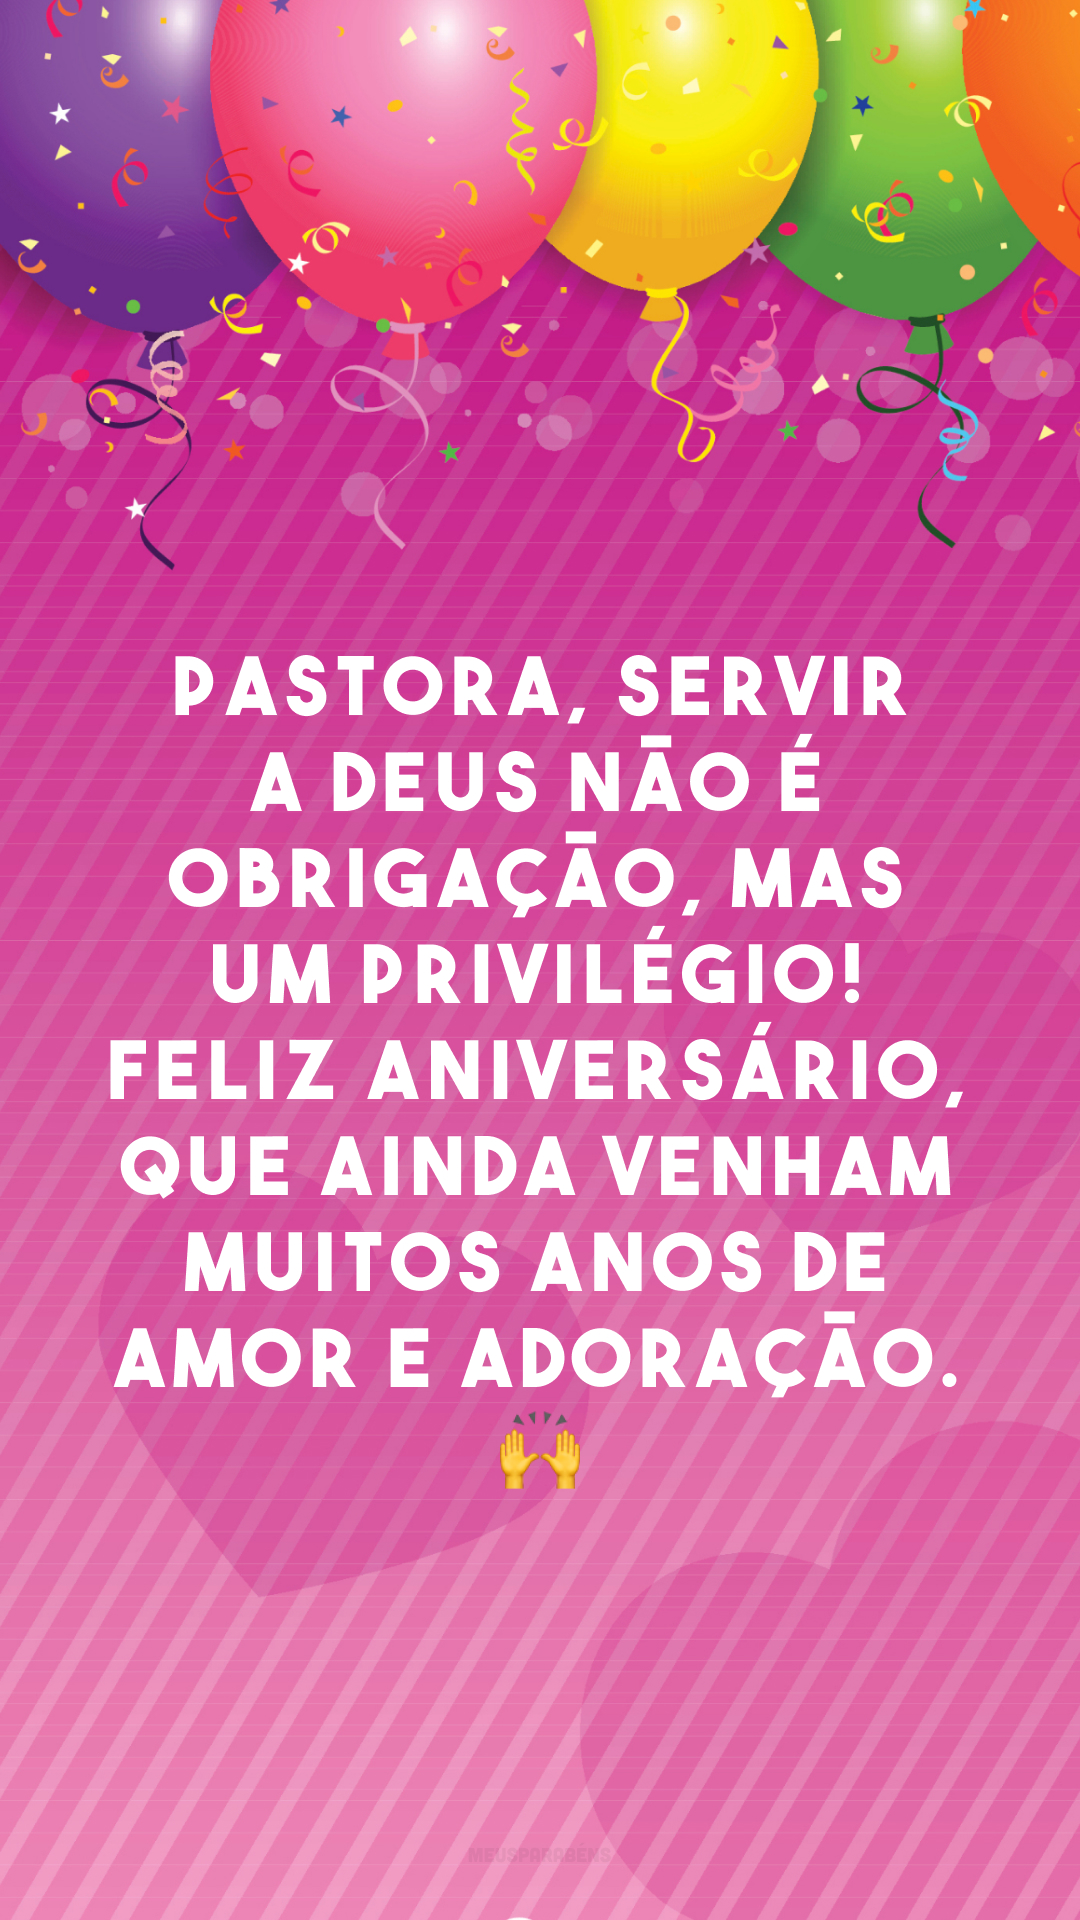 Pastora, servir a Deus não é obrigação, mas um privilégio! Feliz aniversário, que ainda venham muitos anos de amor e adoração. 🙌